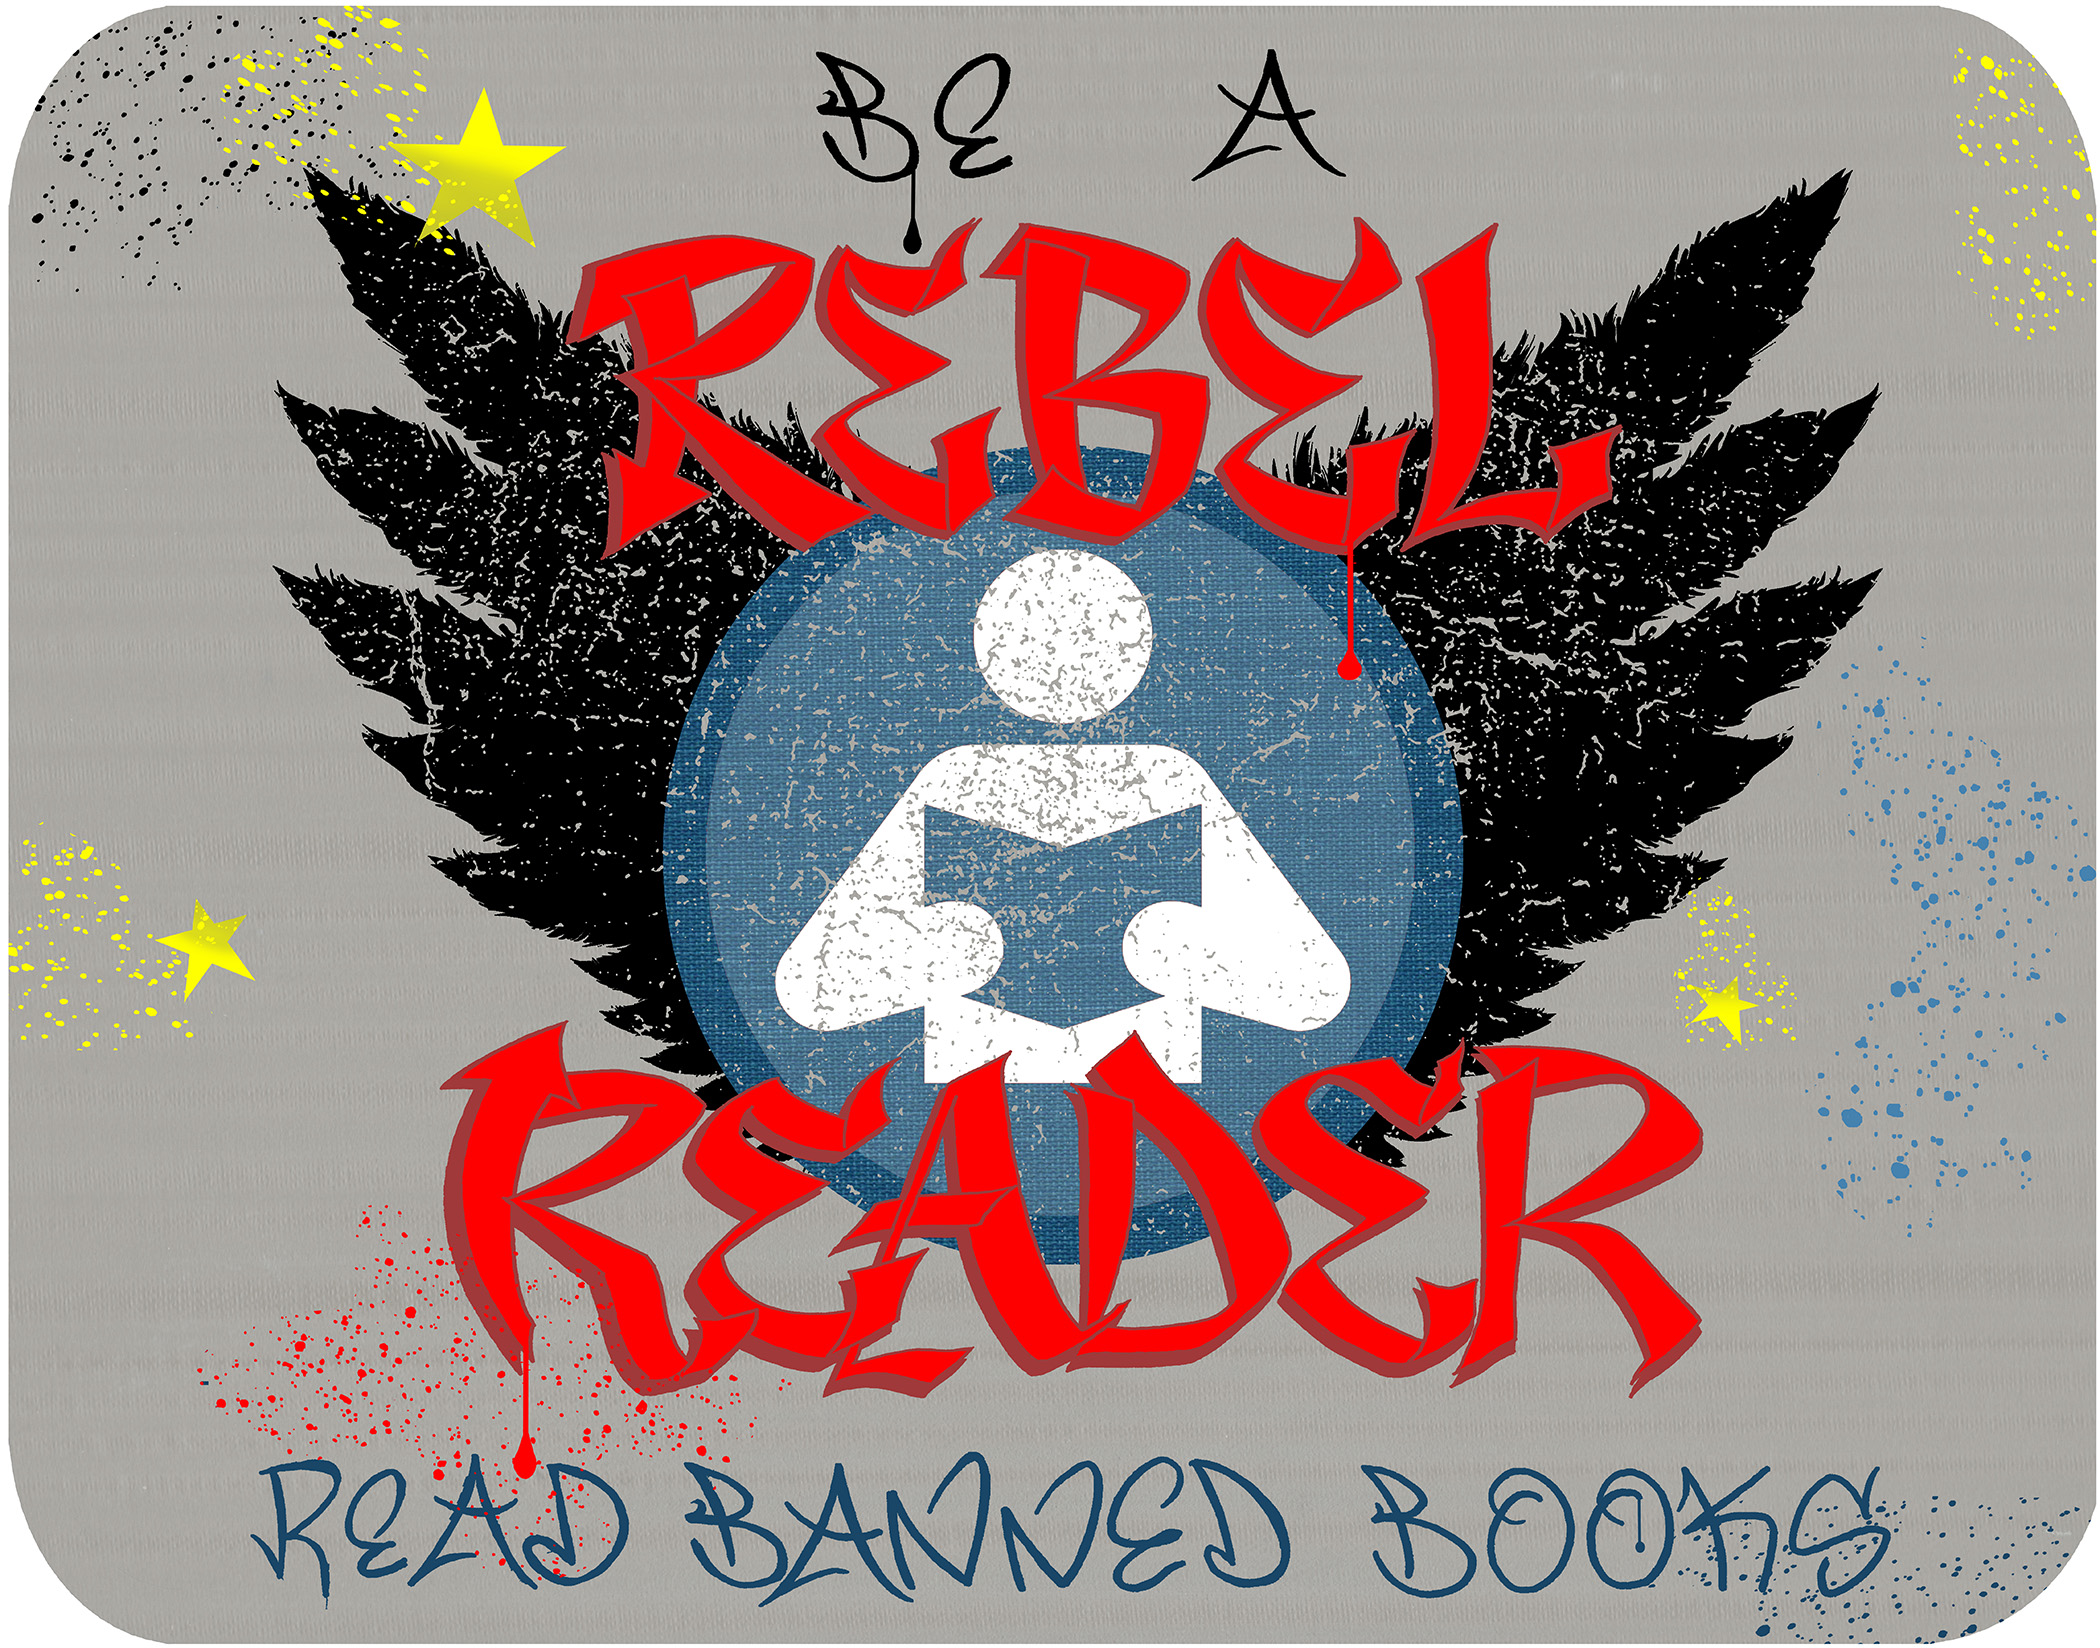 Rebel Reader Banned Books (horizontal)